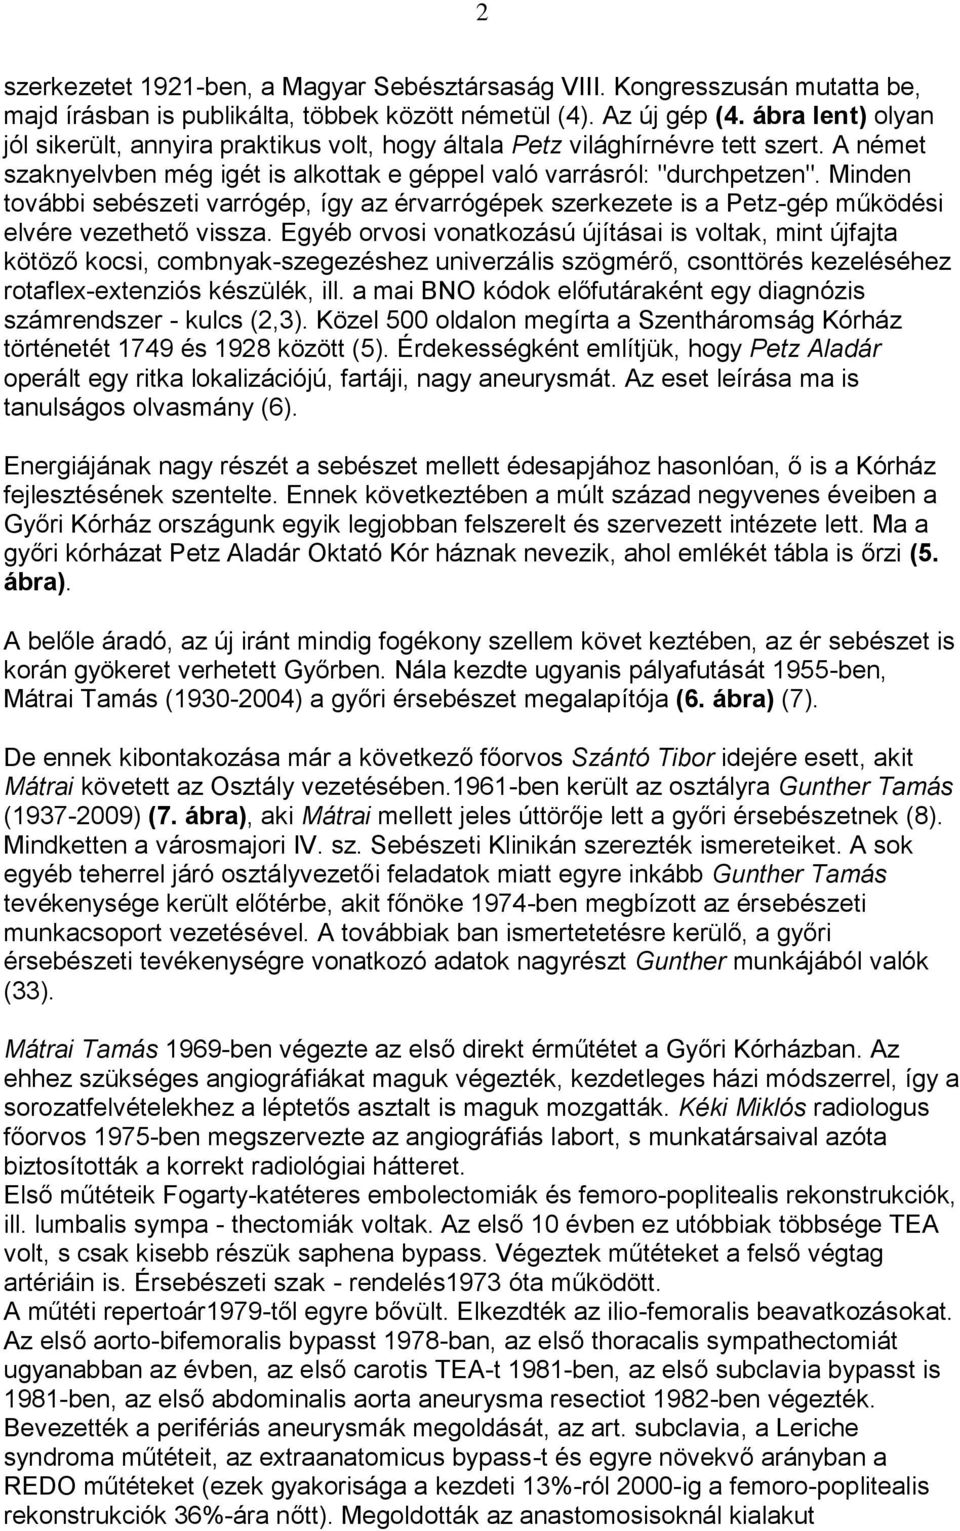 HISTÓRIA. Korai érsebészeti műhelyek Magyarországon, a múlt század  ötvenes-nyolcvanas éveiben VI. - PDF Ingyenes letöltés